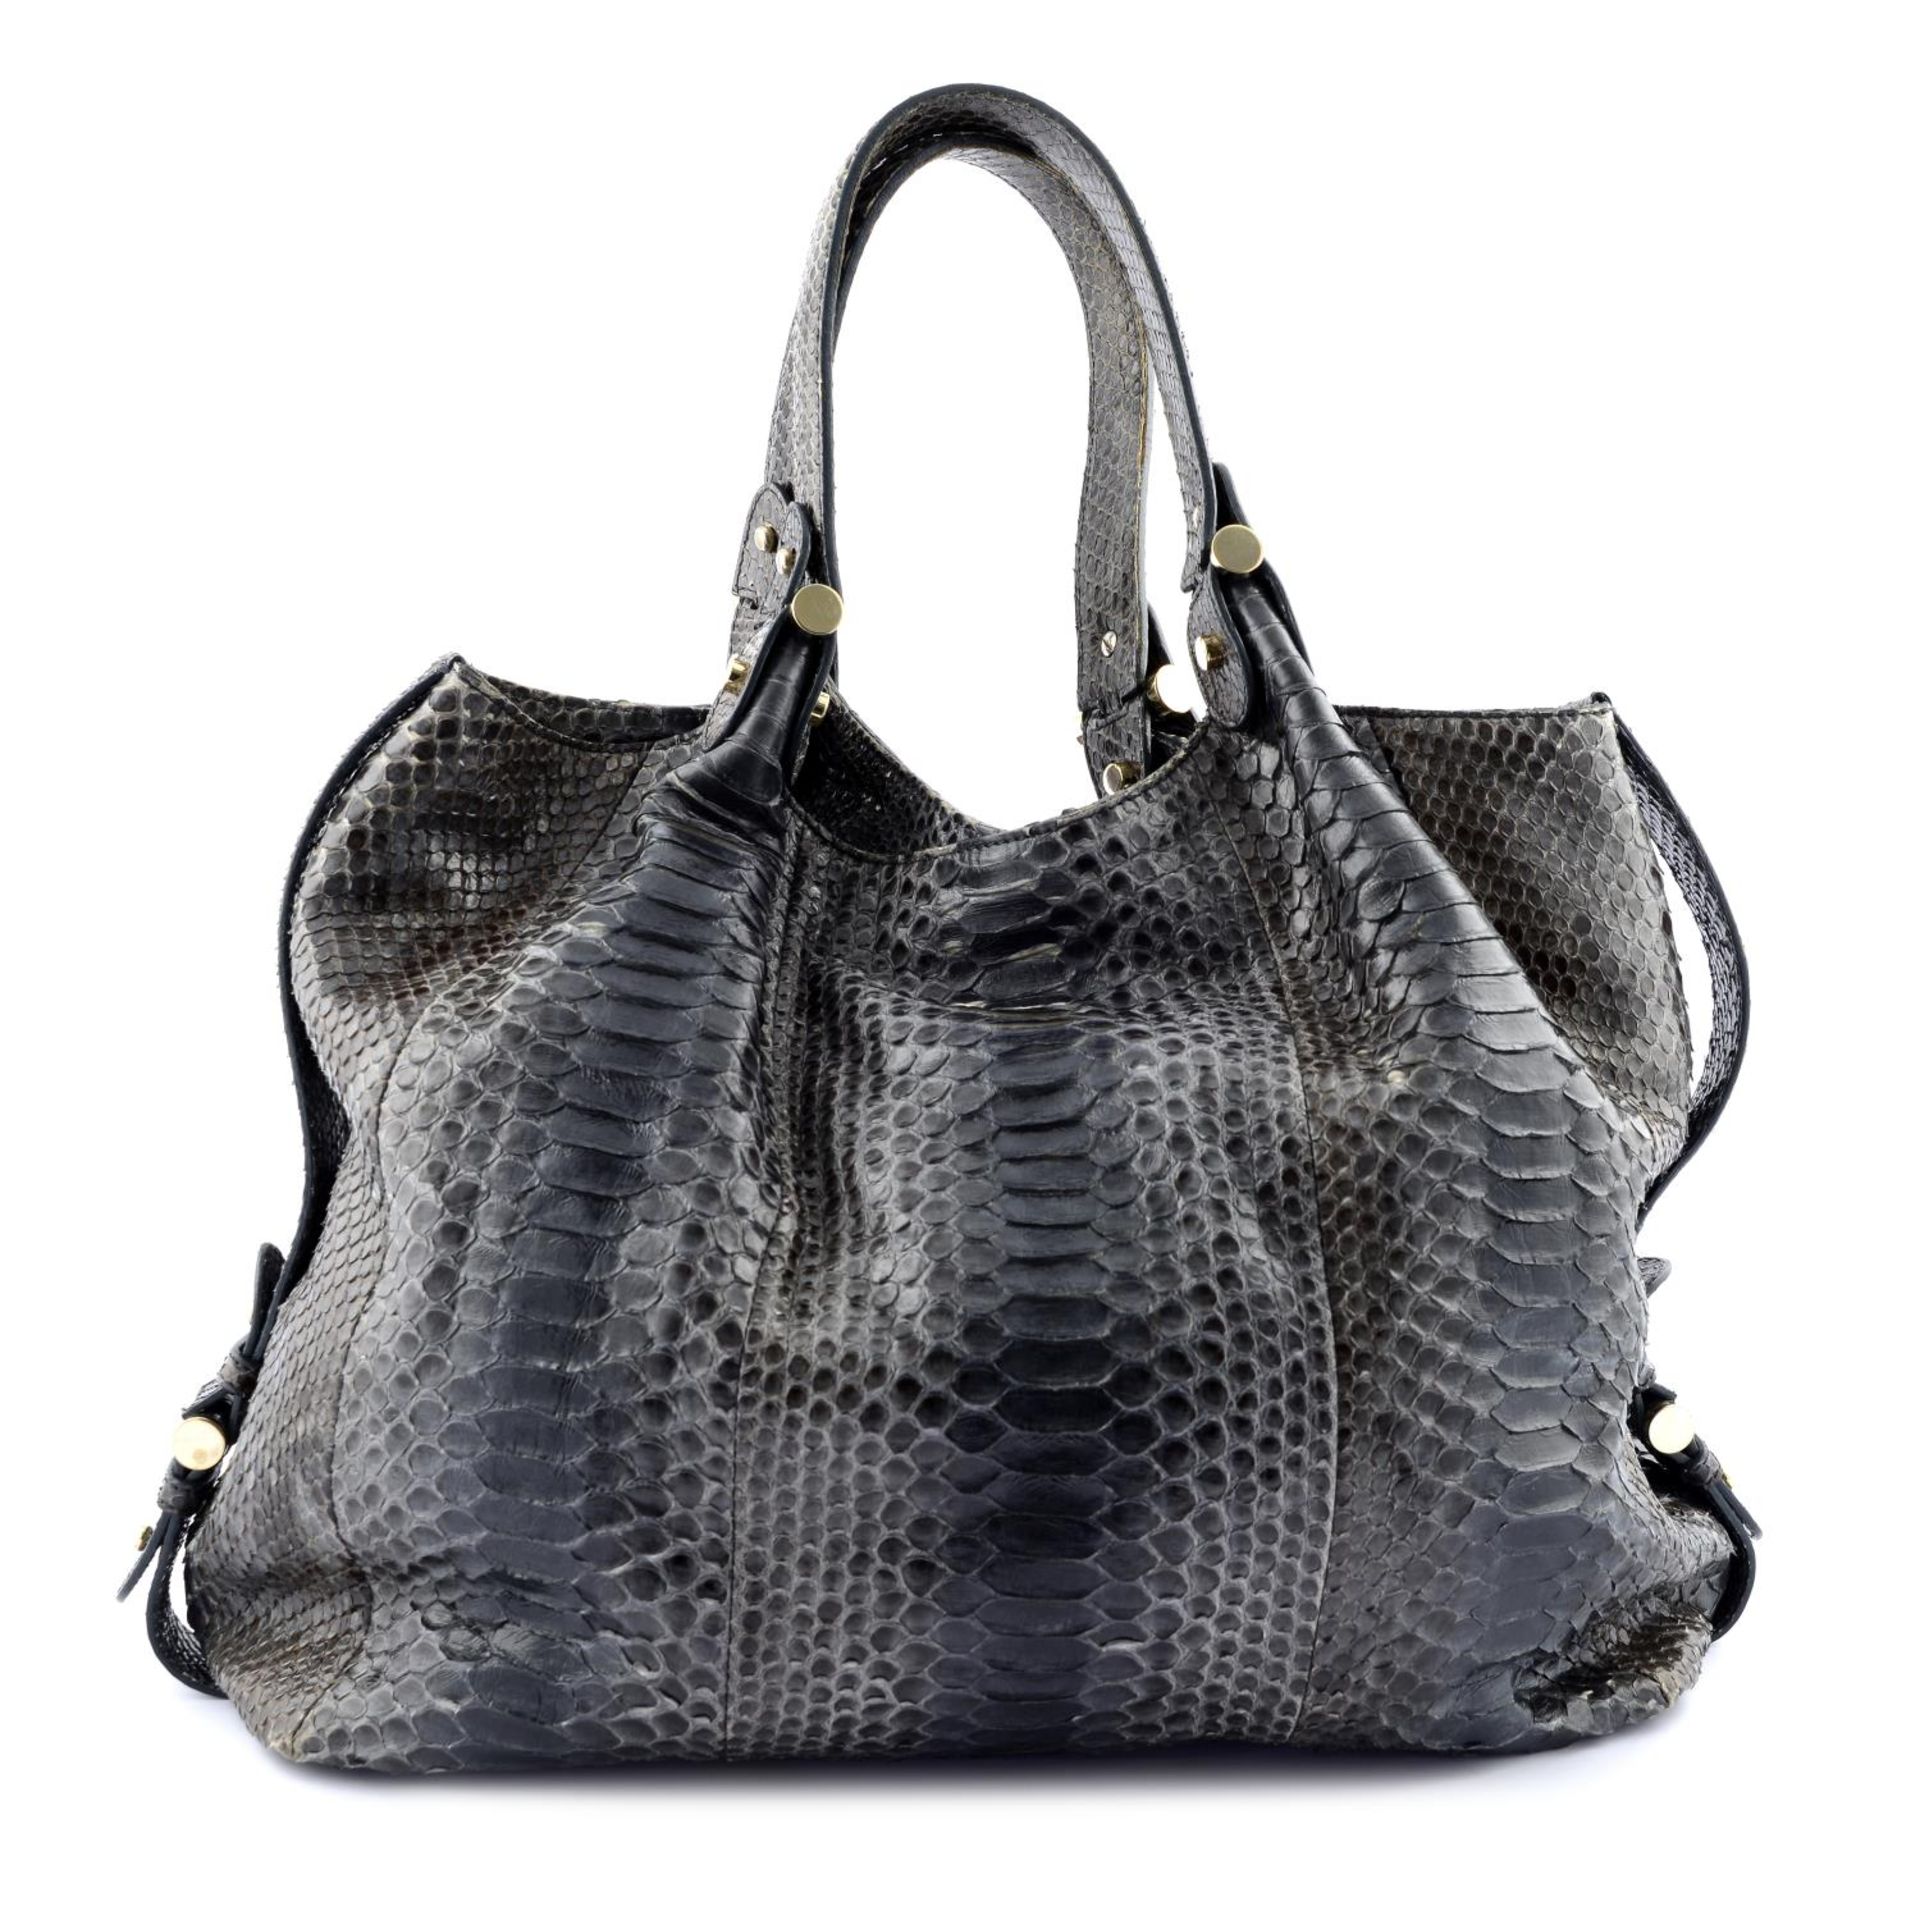 ARMANI - a python skin hobo handbag.